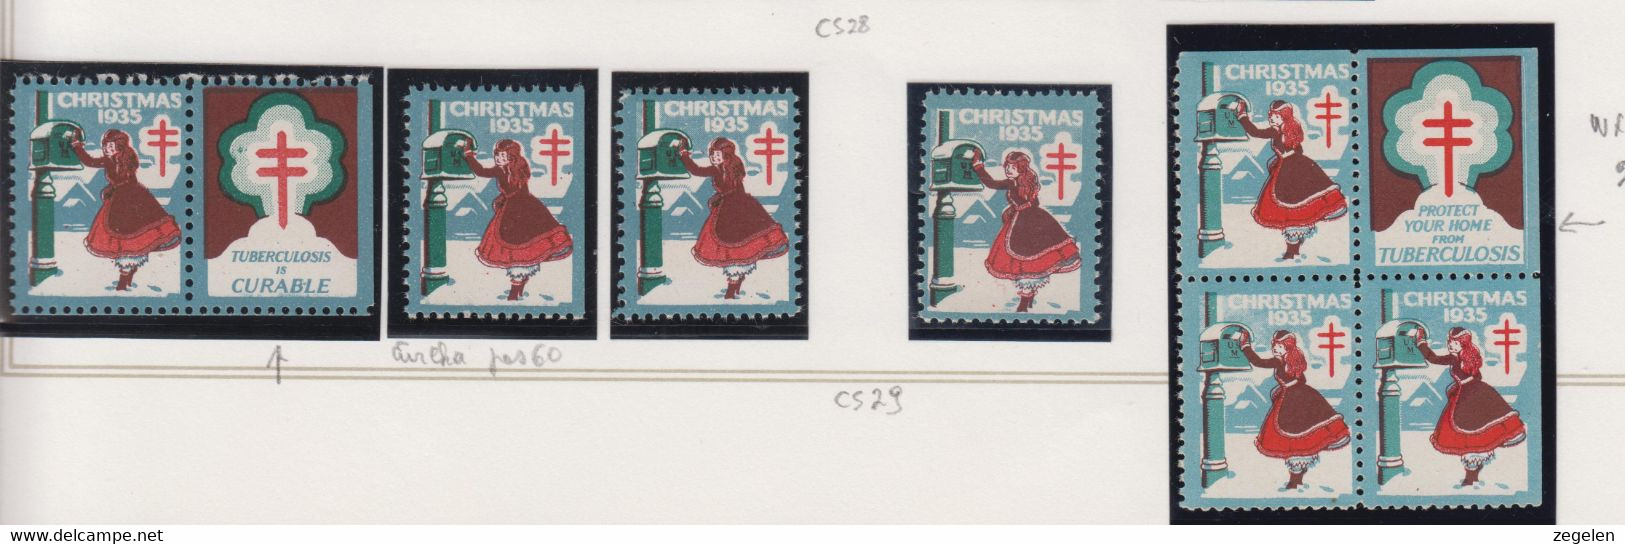 Verenigde Staten Kerstvignet Scott-cat. Jaar 1935 CS29 WX76/77 1 Printermark/drukkenmerk + 2 Versch.vignetten - Non Classés